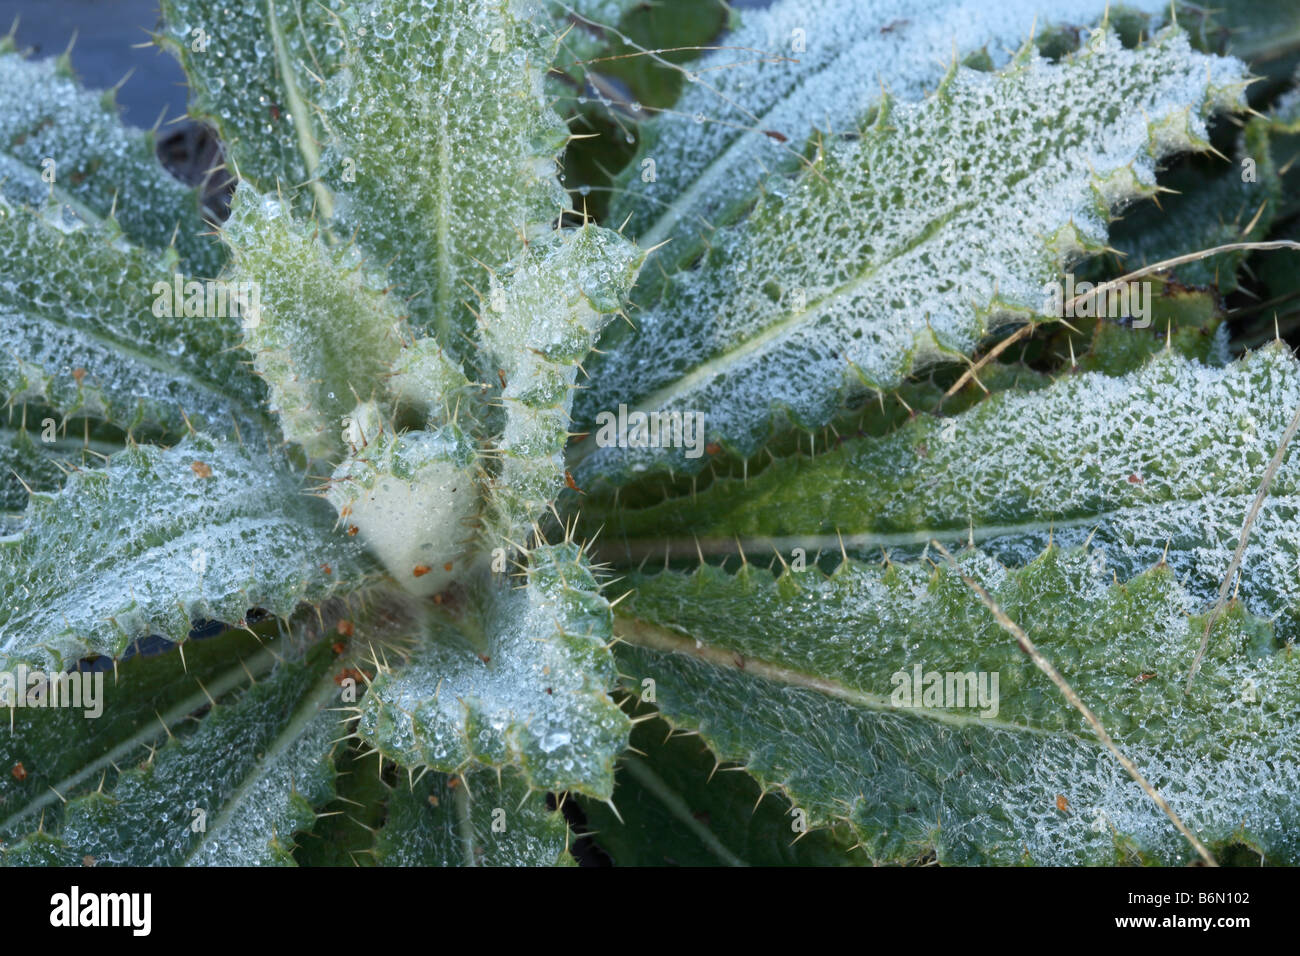 Cuore di un giovane thistle ricoperta di brina mattutina. Roverella di foglie spinose Berkheya cuore coperto di cristalli di ghiaccio Foto Stock